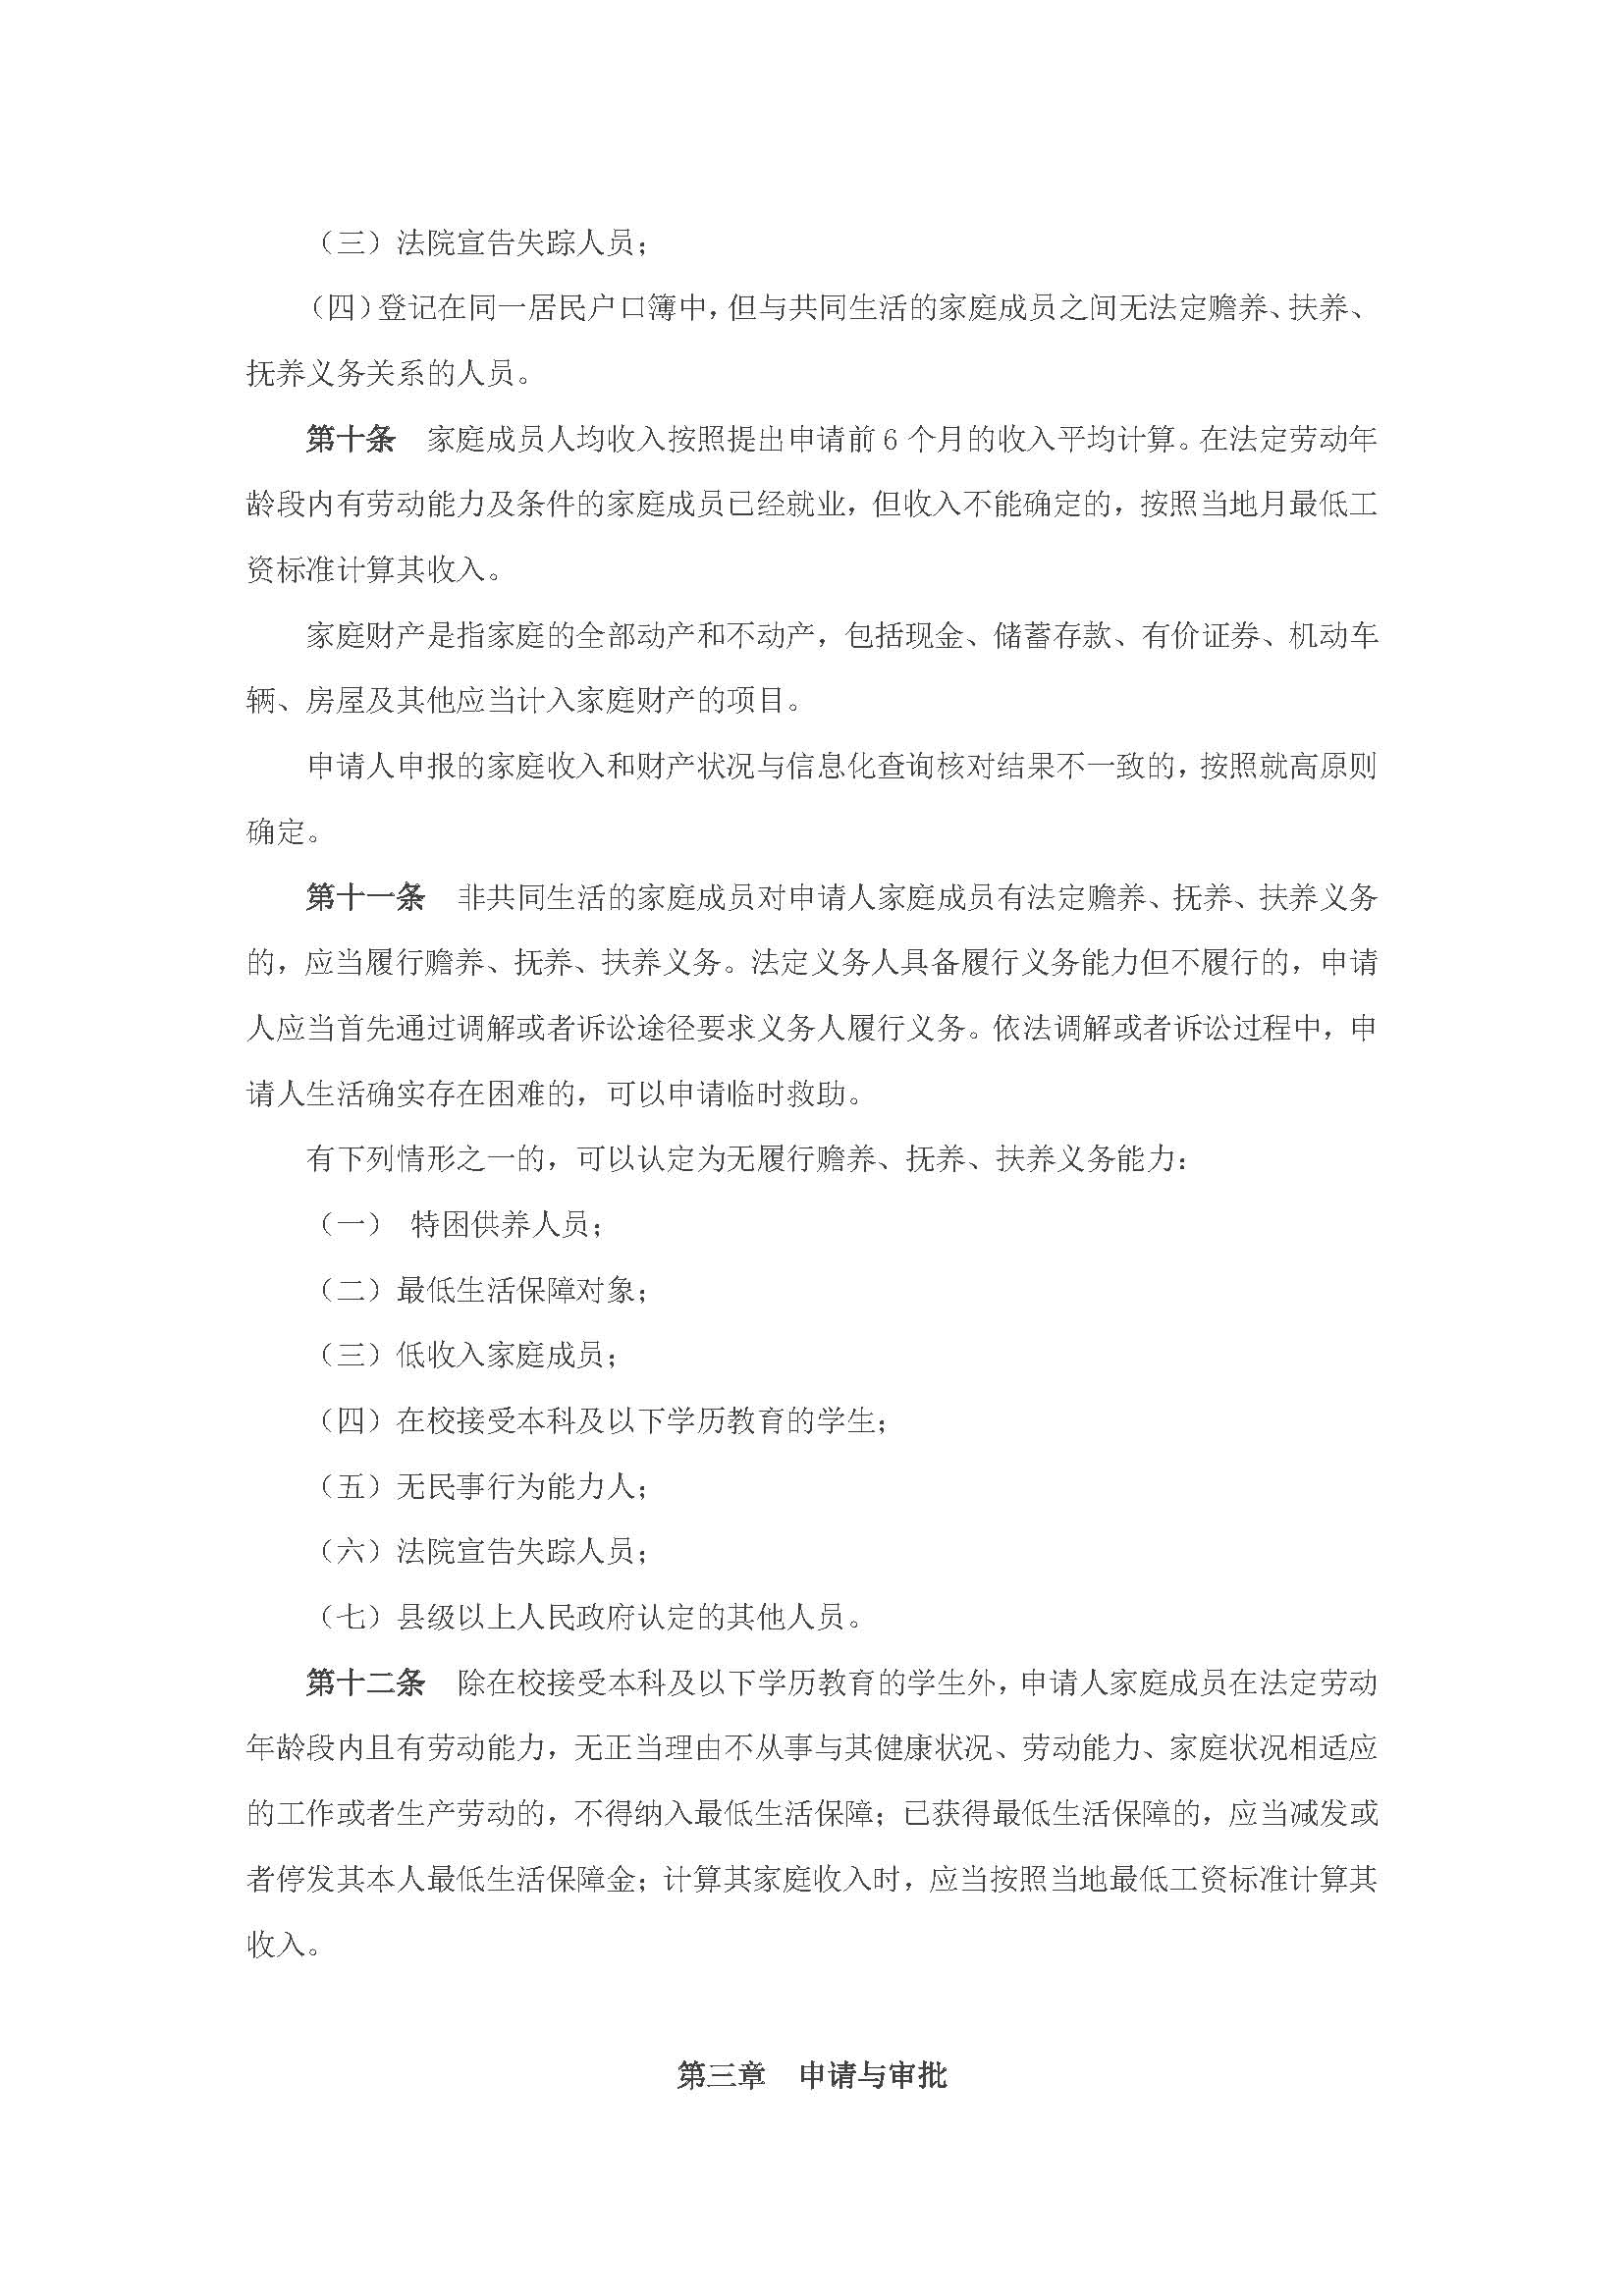 广东省最低生活保障制度实施办法_页面_4.jpg